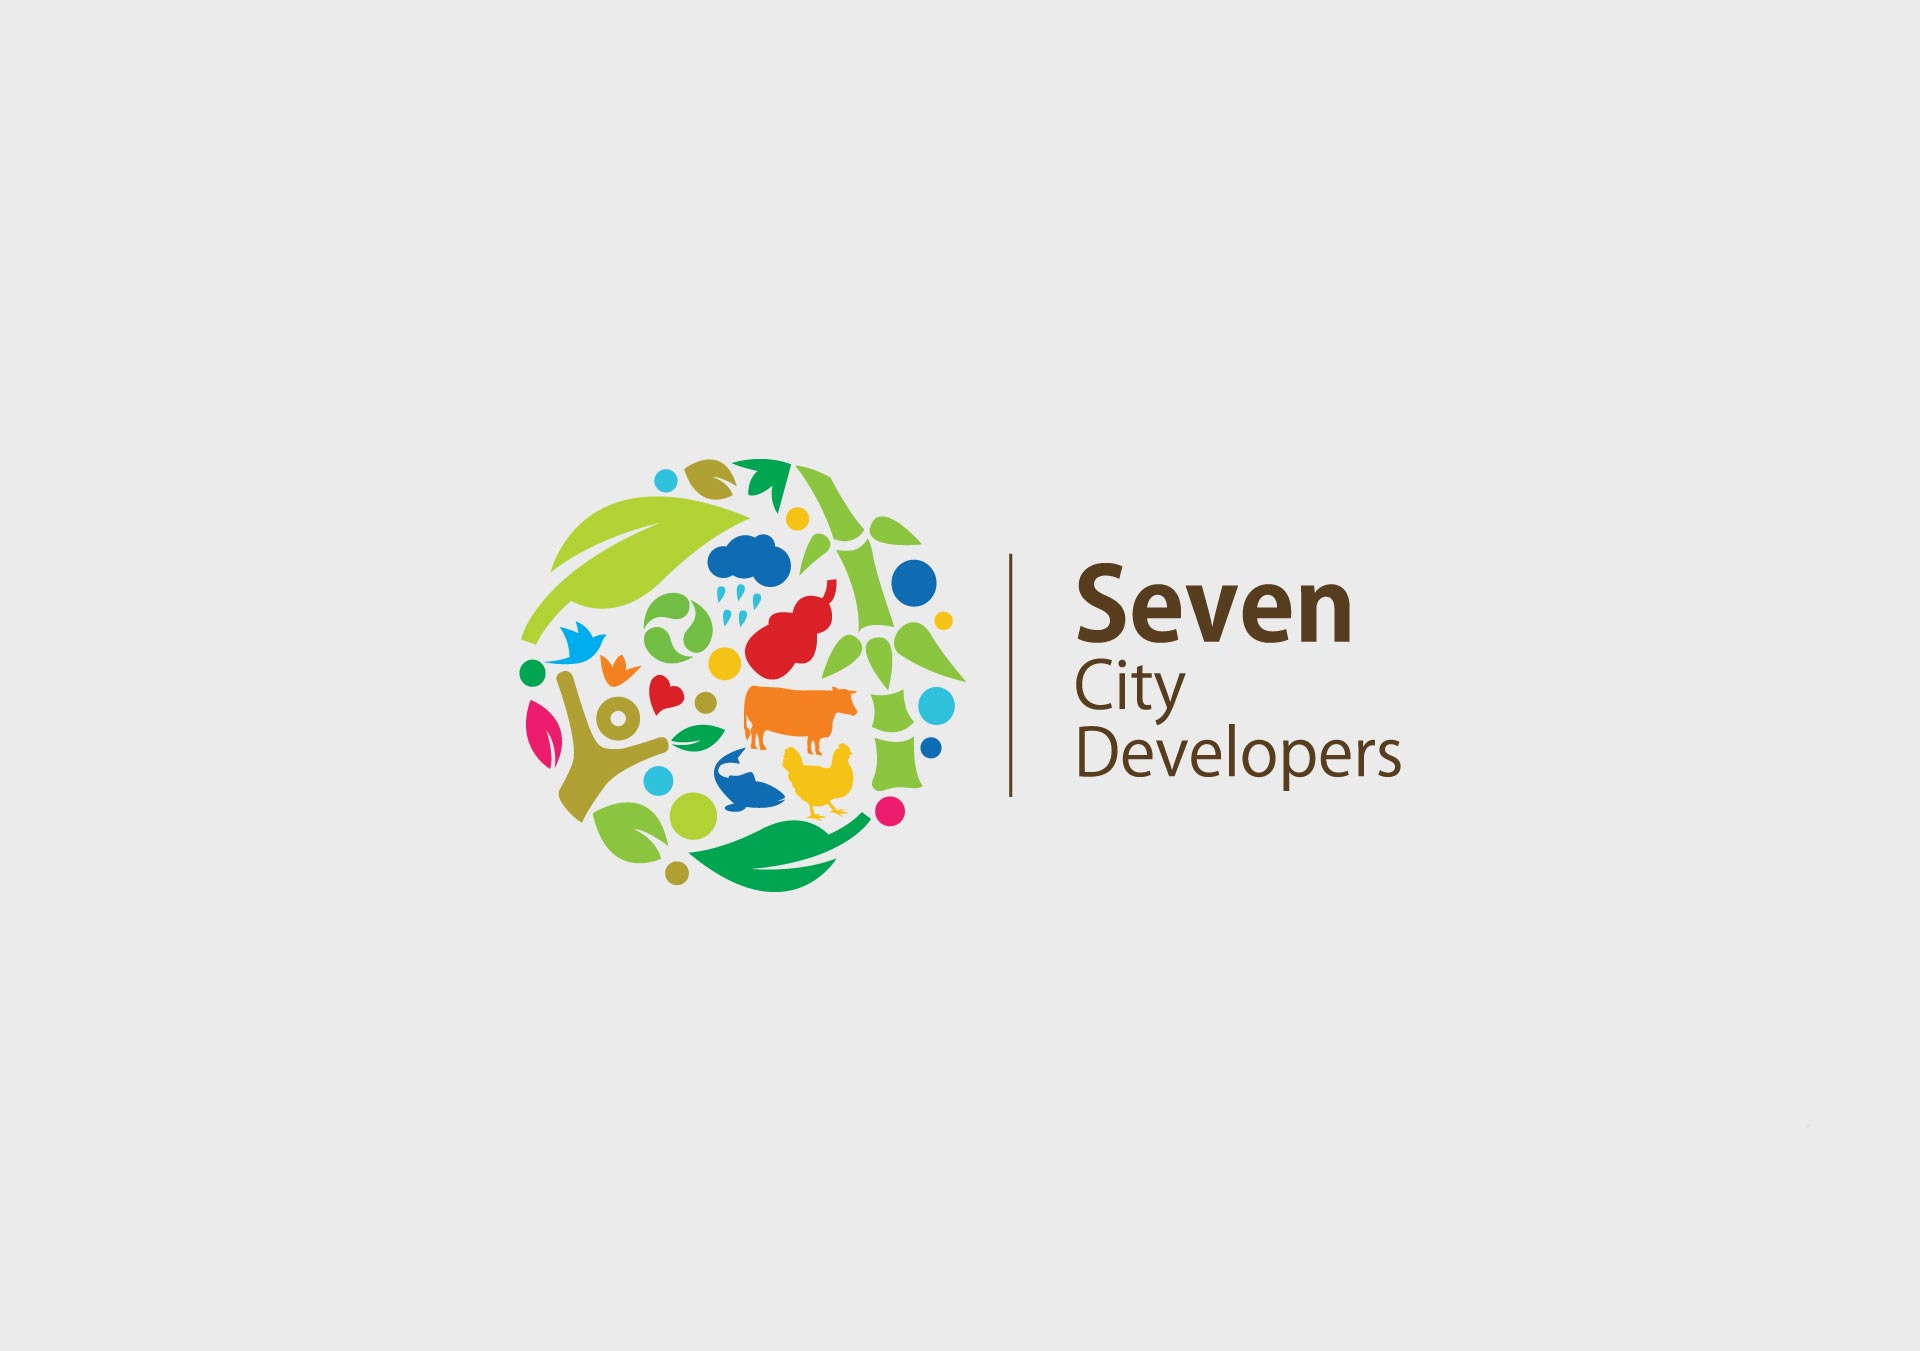 Branding for Seven City Developers